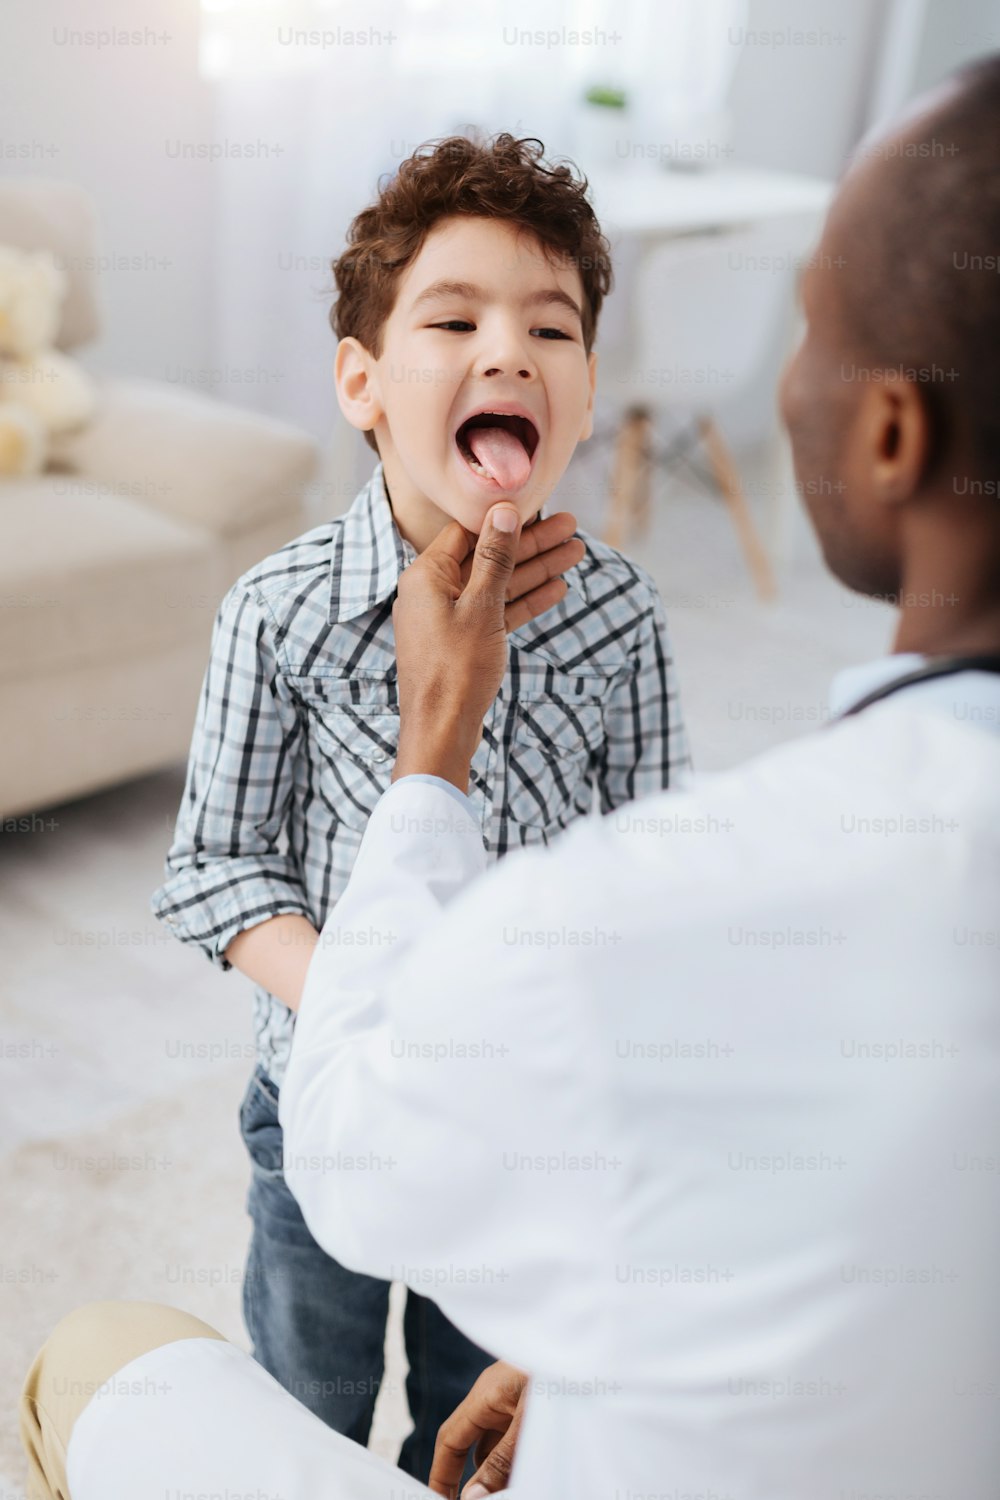 Erkältungssymptome. Energisch ansprechender Junge, der steht, während er Zunge demonstriert und männlicher Arzt sein Kinn berührt